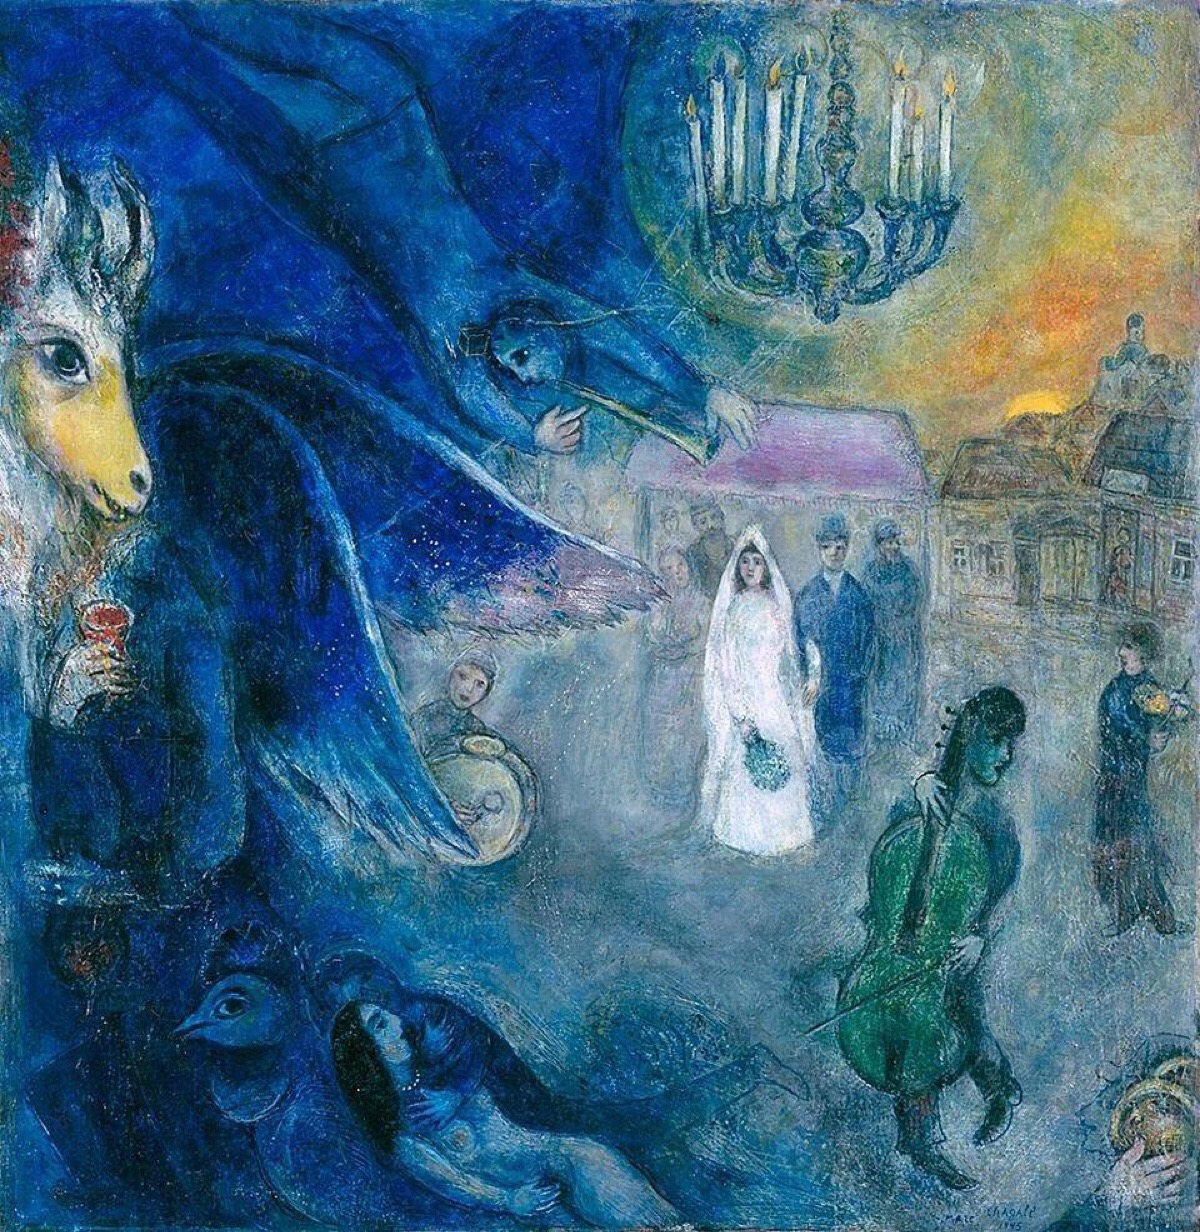 马克·夏加尔 marc chagall(1887 年-1985年)白俄罗斯裔法国画家,版